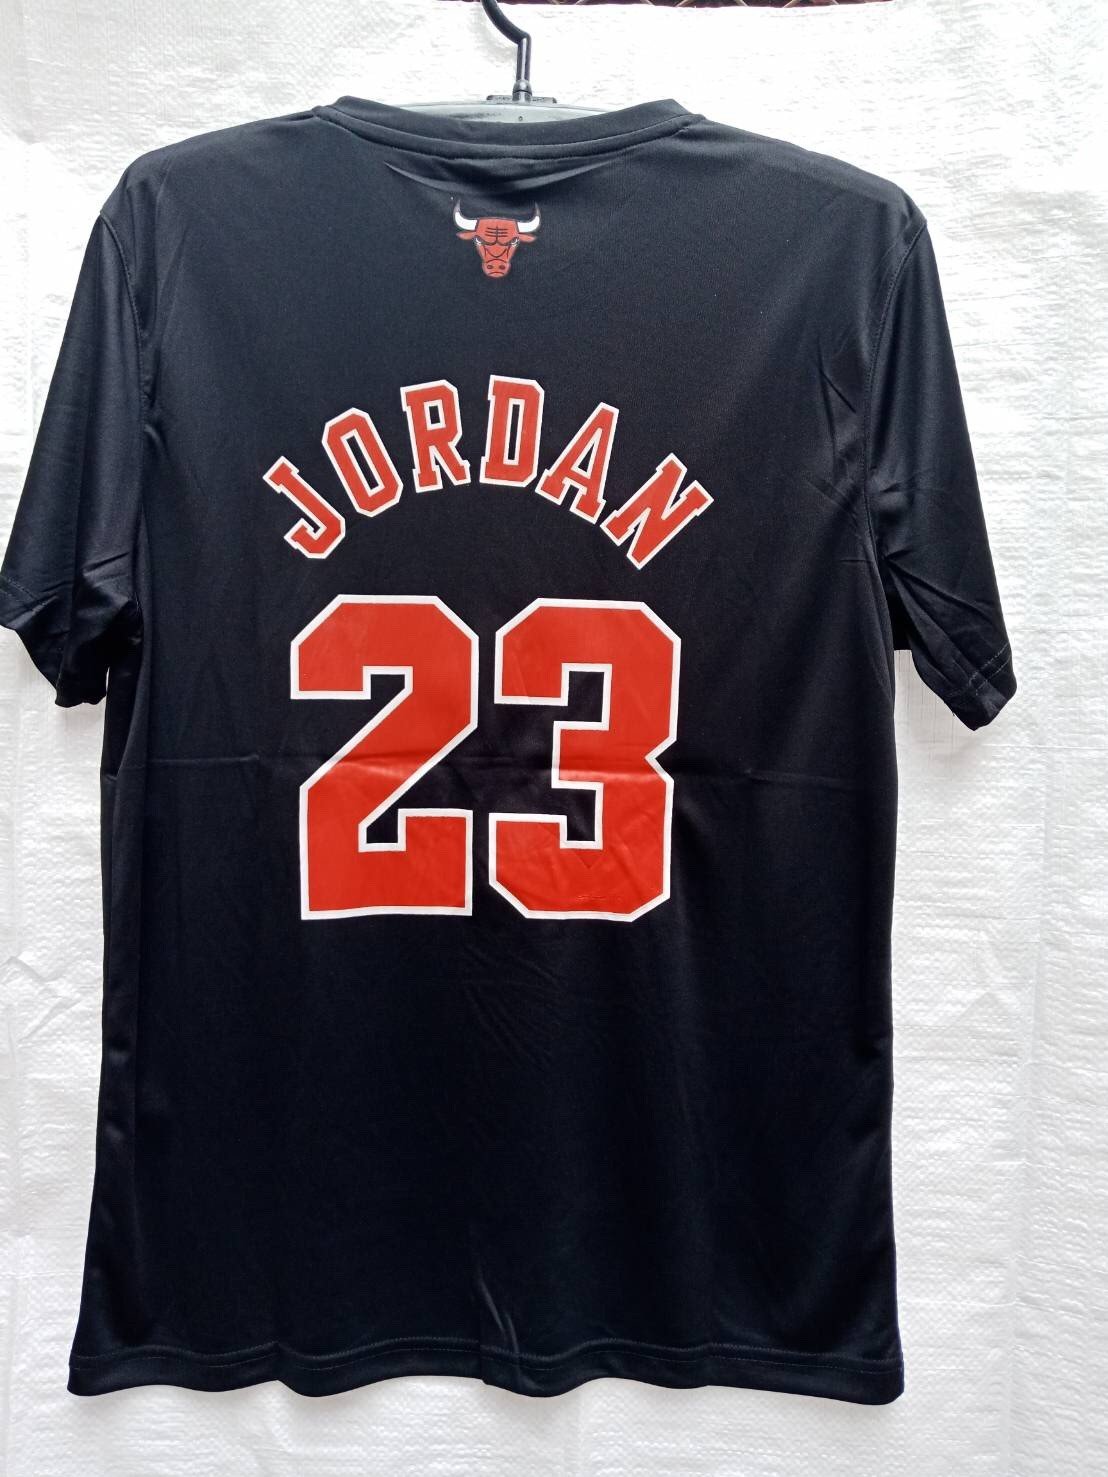 เสื้อบาส Jordan Chicago เบอร์ 23 สีดำ